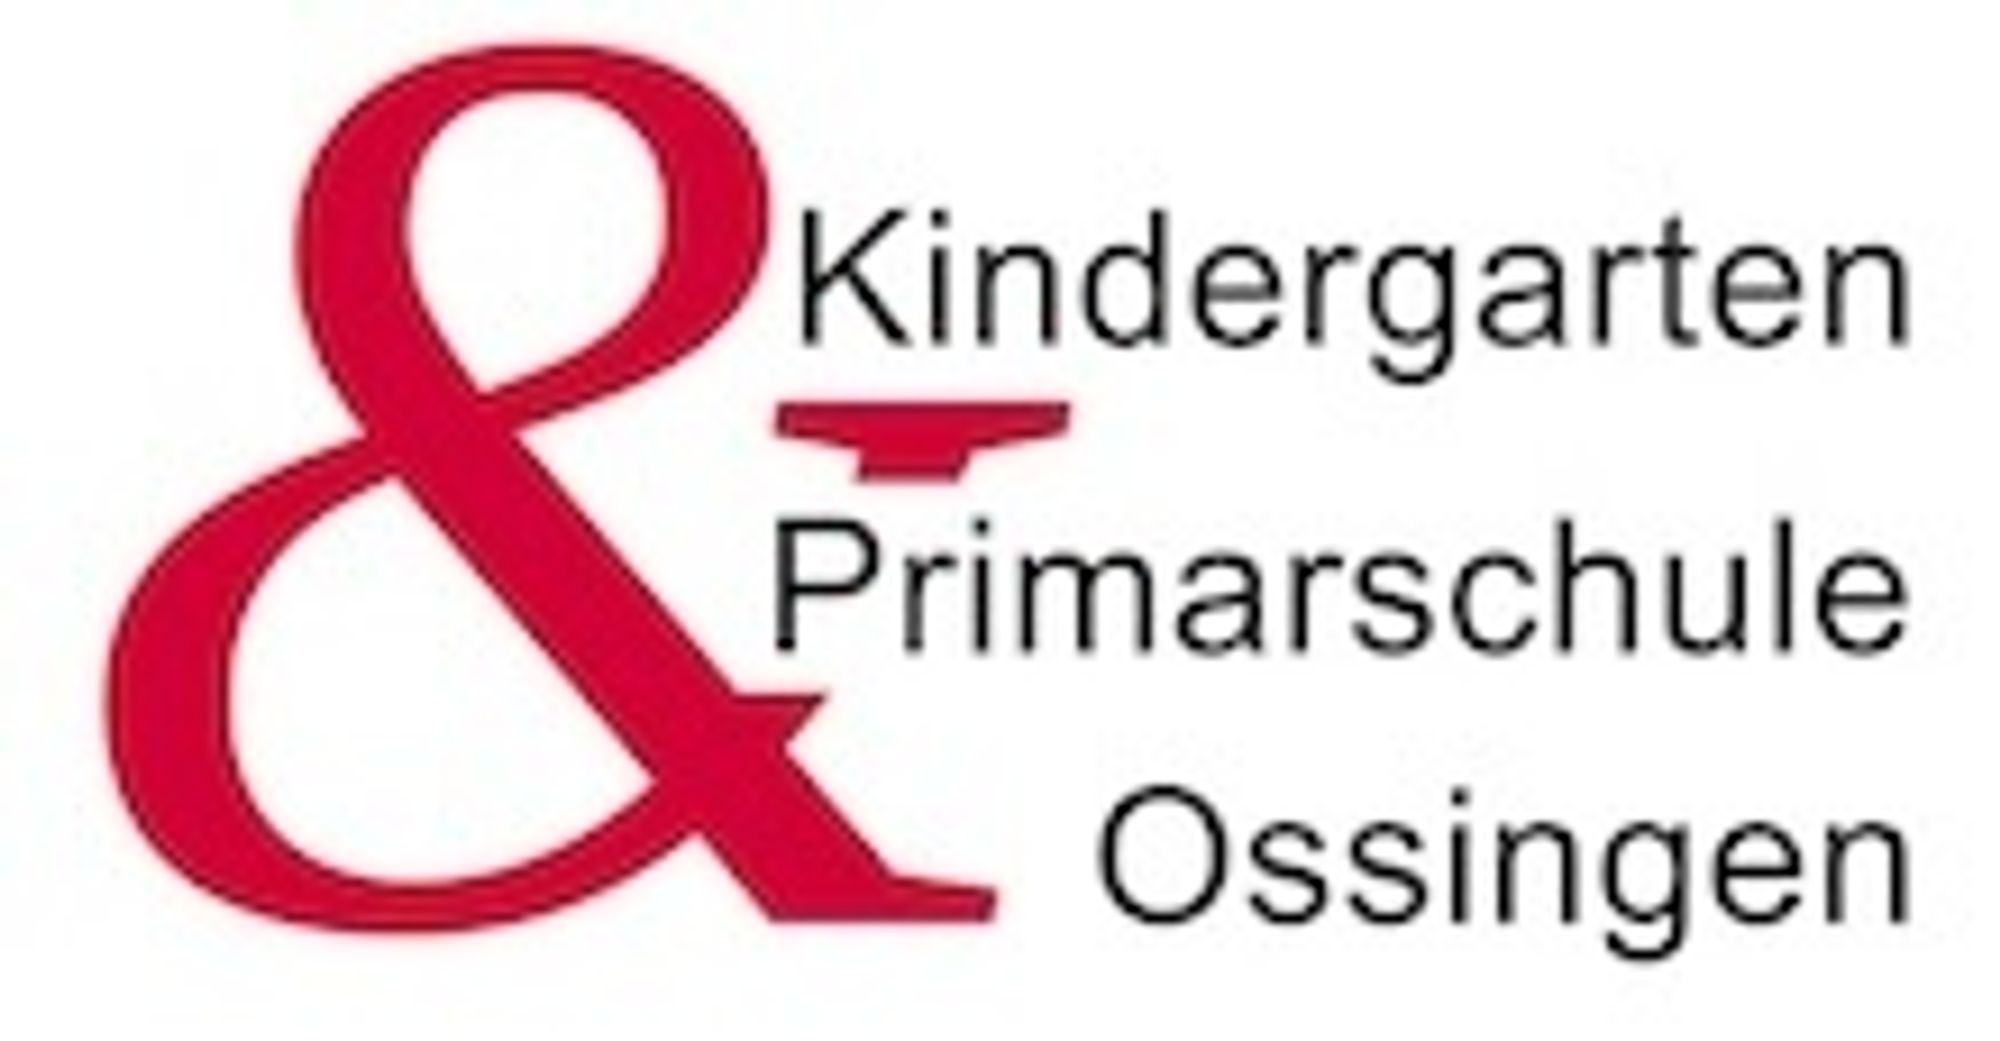 www.ps-ossingen.ch